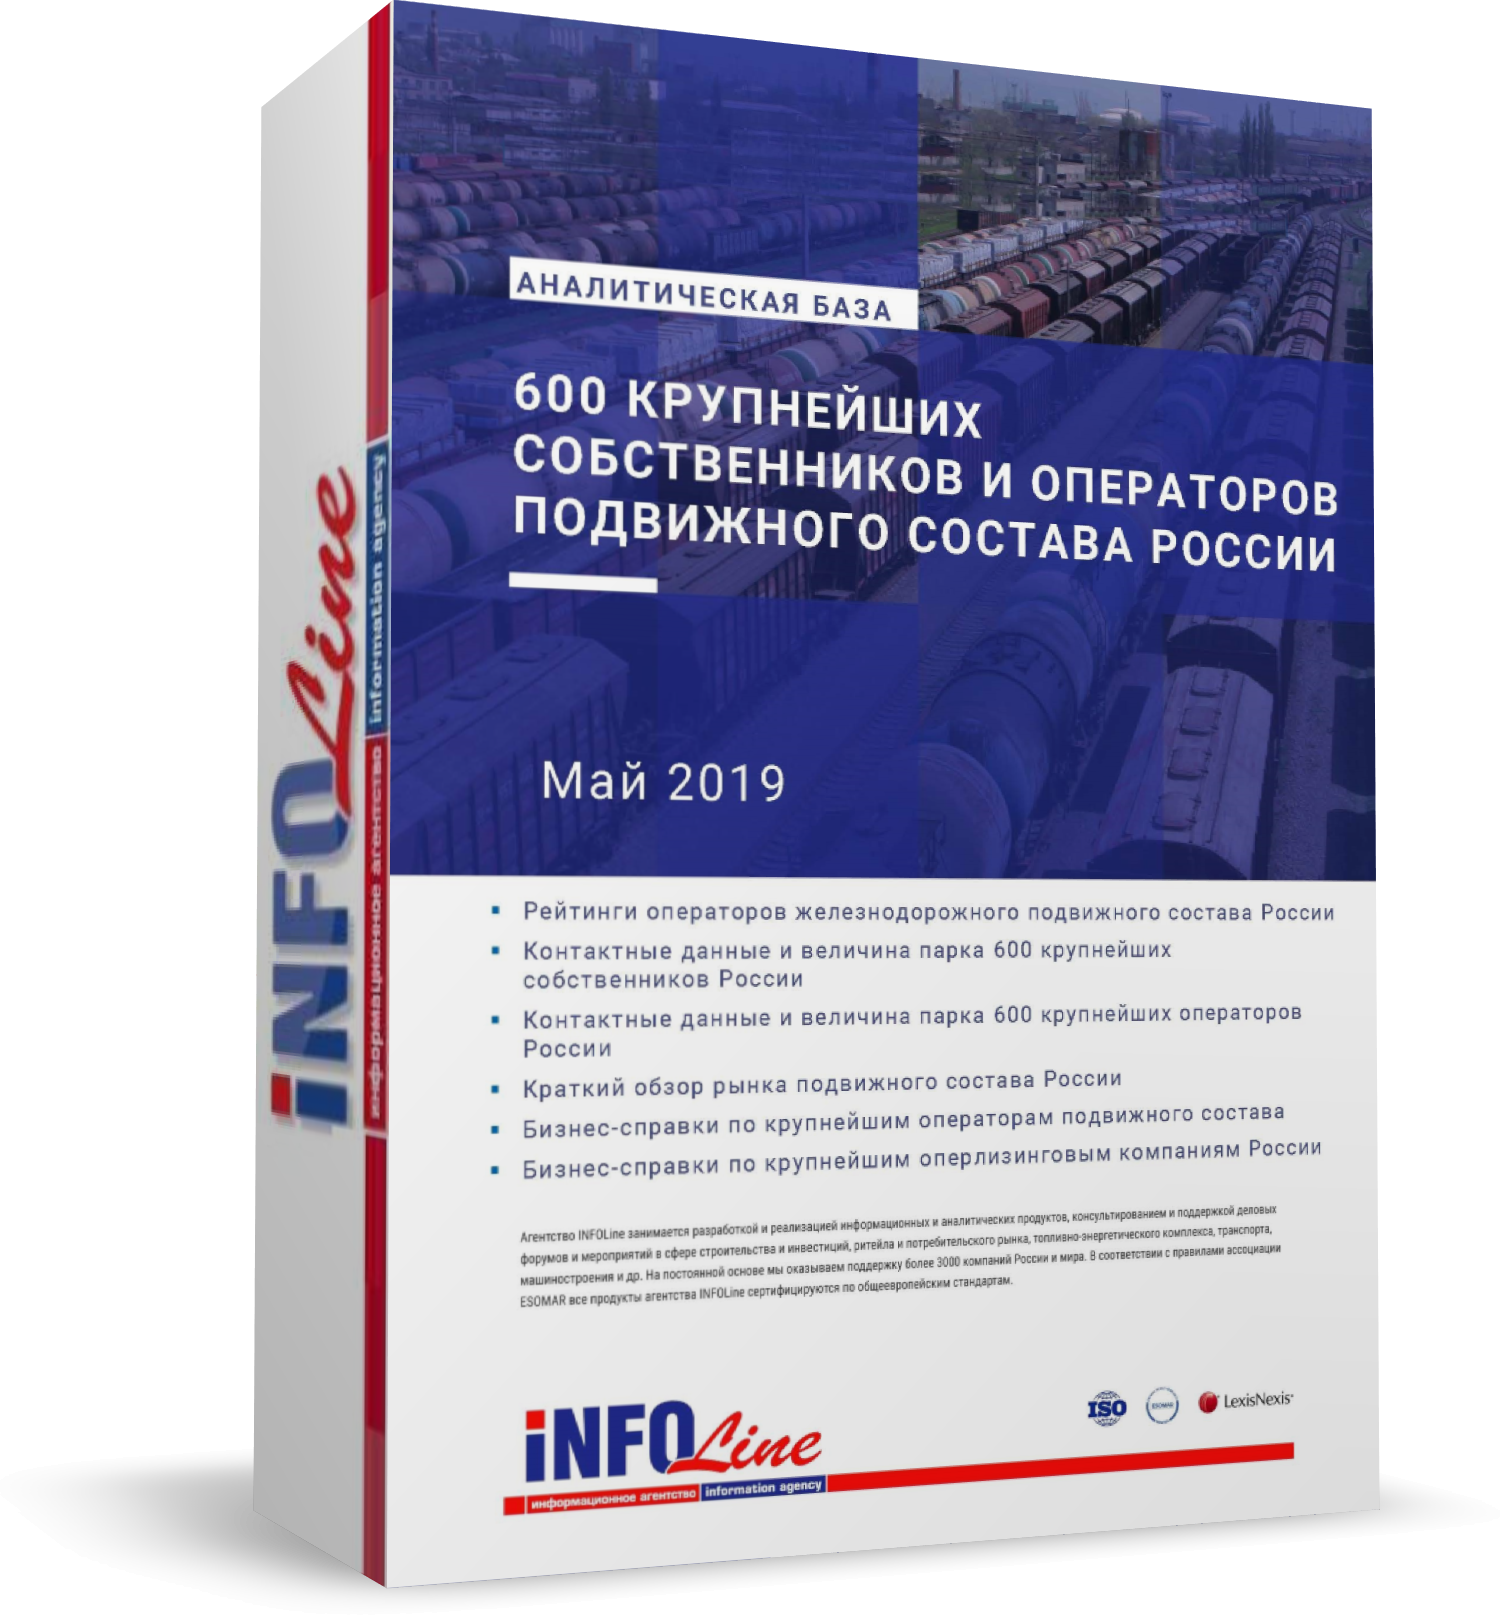 Аналитическая база "600 крупнейших собственников и операторов подвижного состава России. 2019 год" (доступна обновленная версия)